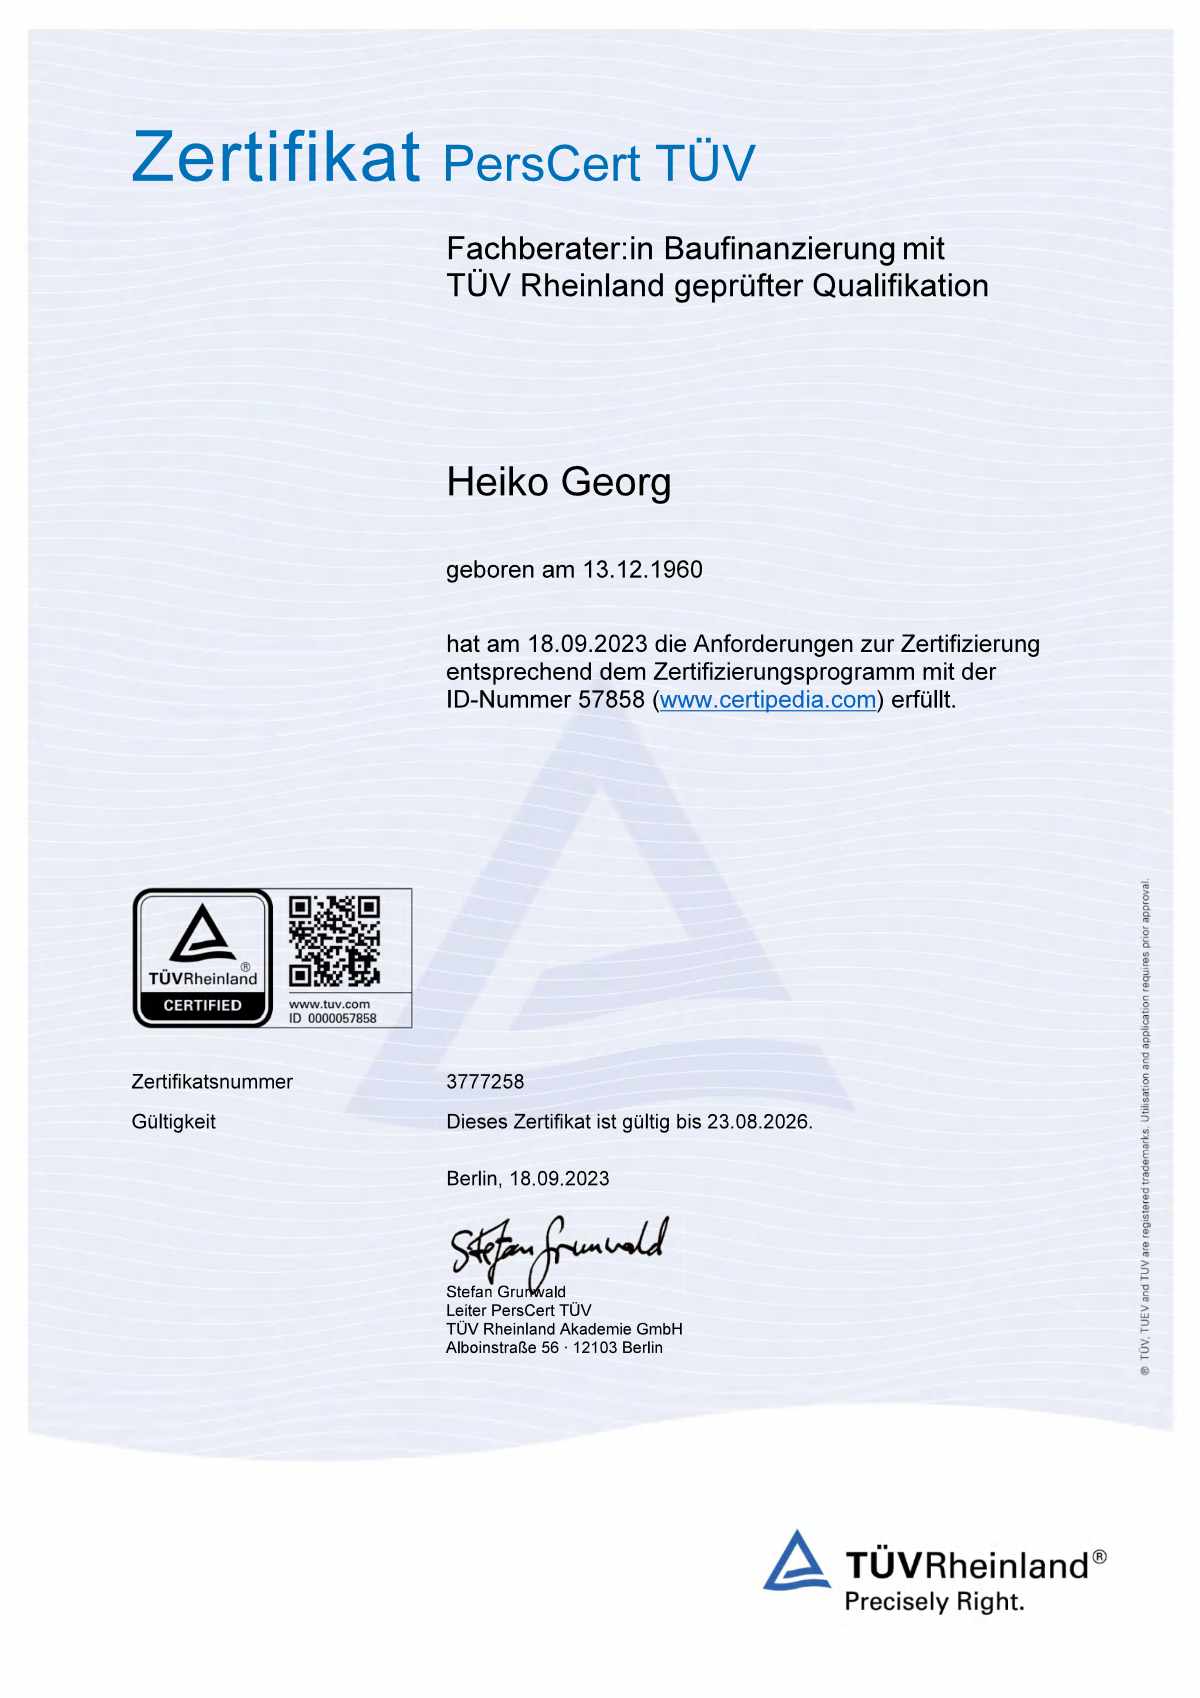 Zertifikat PersCert TÜV für Heiko Georg - Fachberater für Baufinanzierung mit TÜV Rheinland geprüfter Qualifikation